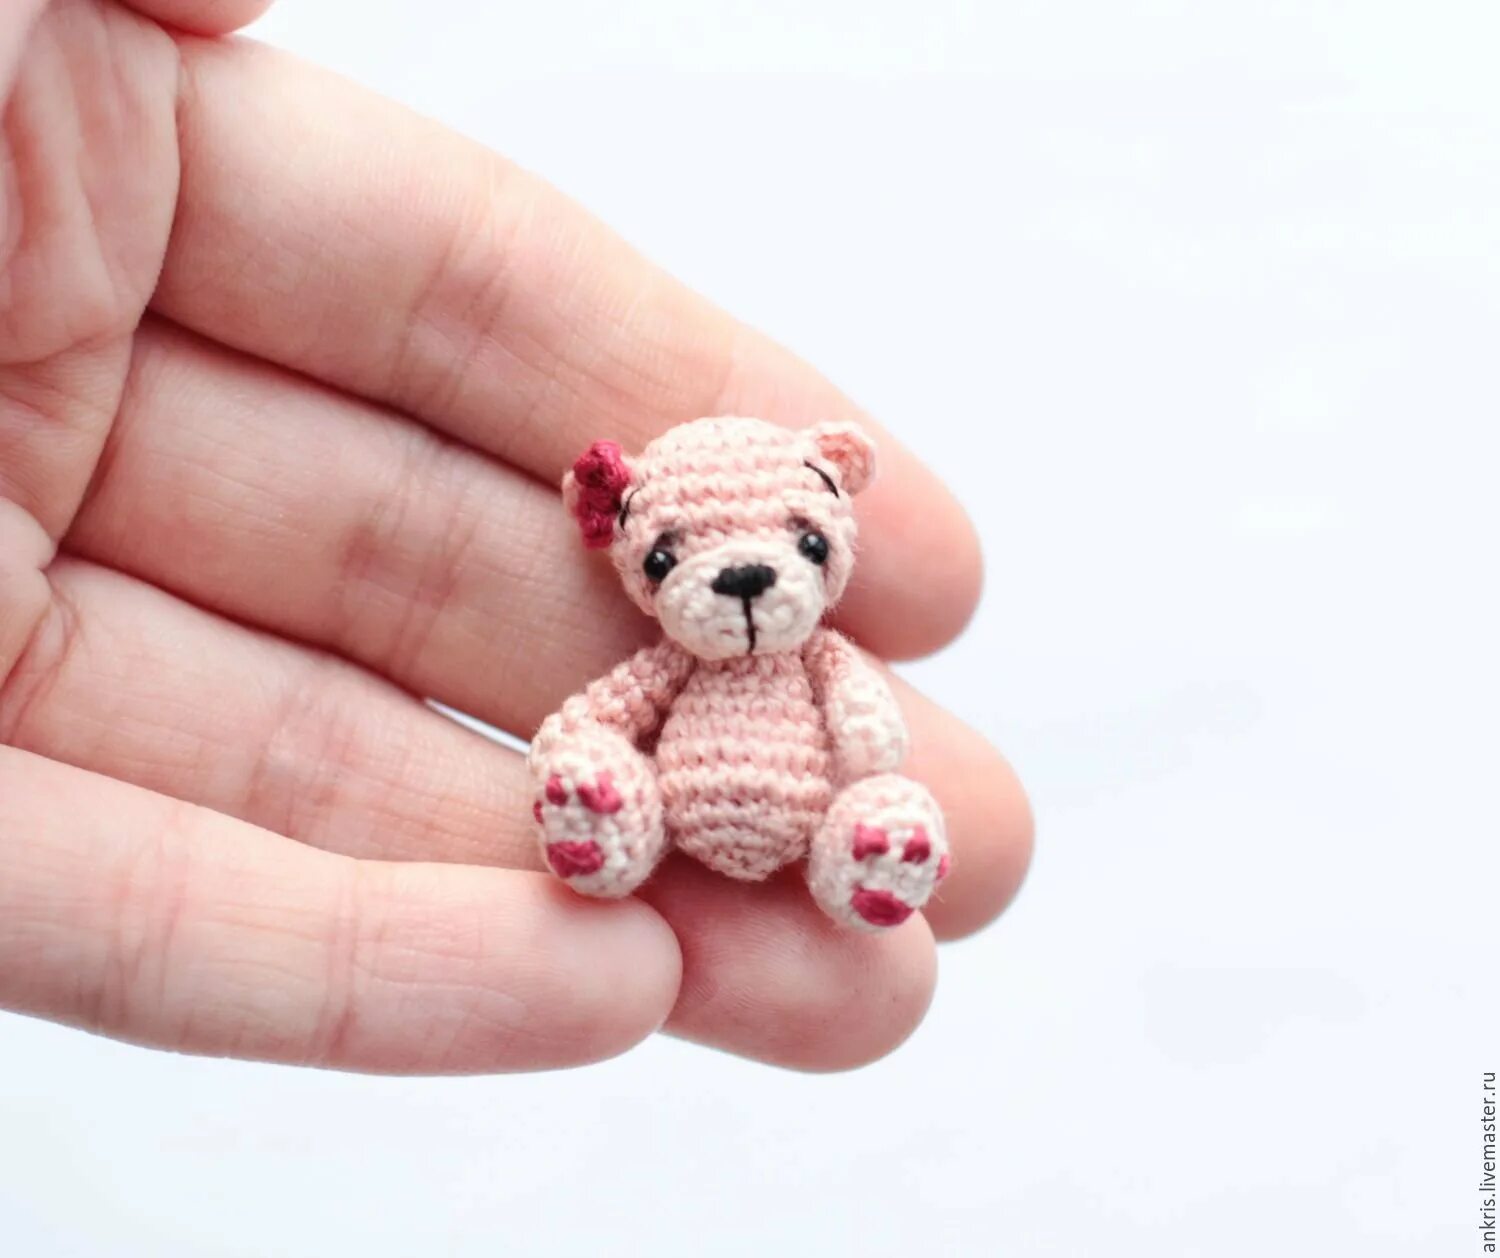 Микро игрушки крючком. Mishka Amigurumi мишка. Медведь Карамелька амигуруми. Микровязание амигуруми. Связанные игрушки маленькие.